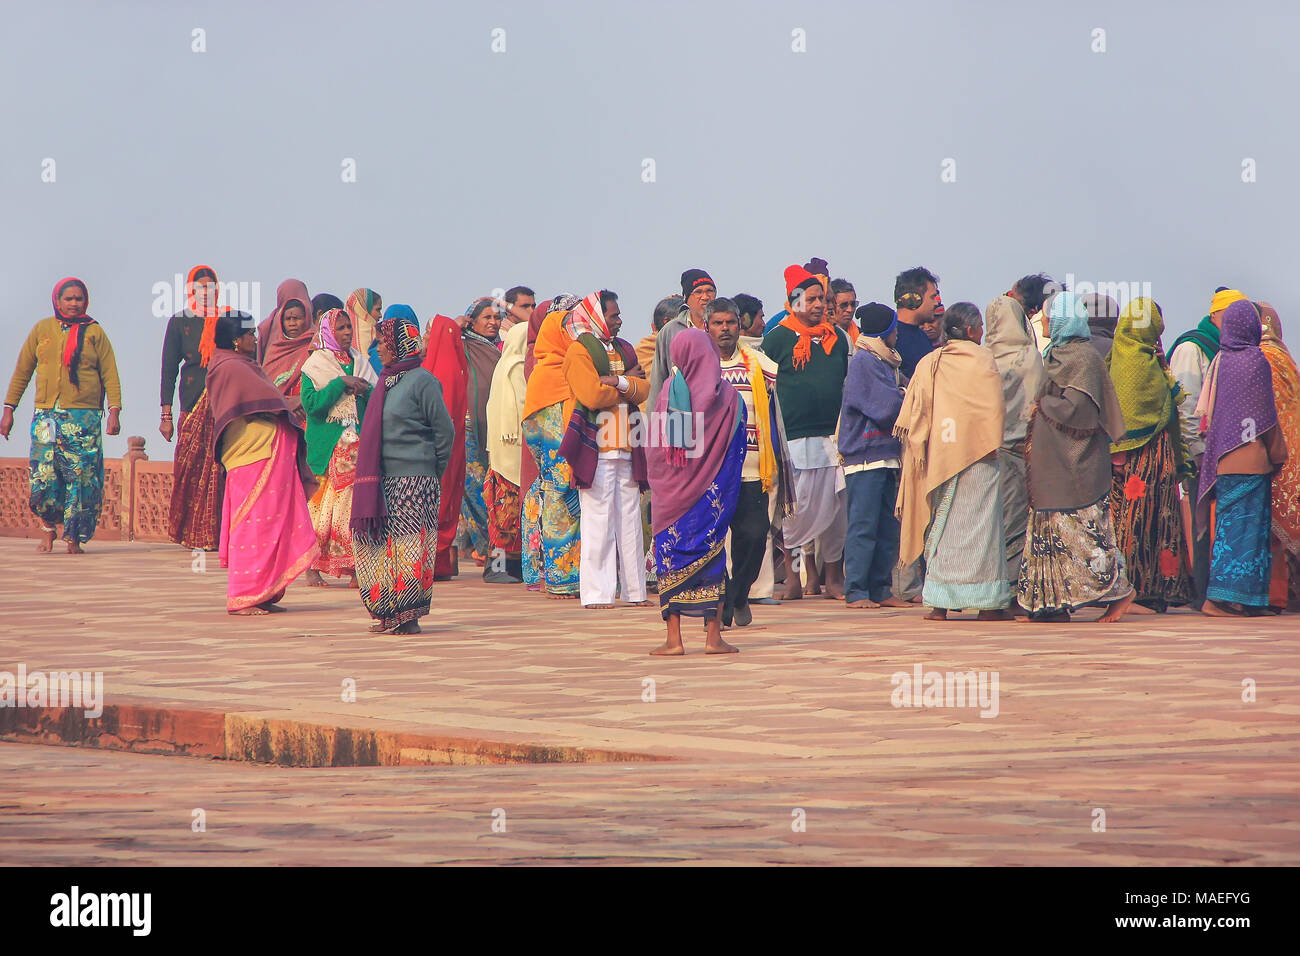 Gruppo di persone che camminano al Taj Mahal complesso in Agra, Uttar Pradesh, India. Taj Mahal è stato designato come un Sito Patrimonio Mondiale dell'UNESCO nel 1983. Foto Stock